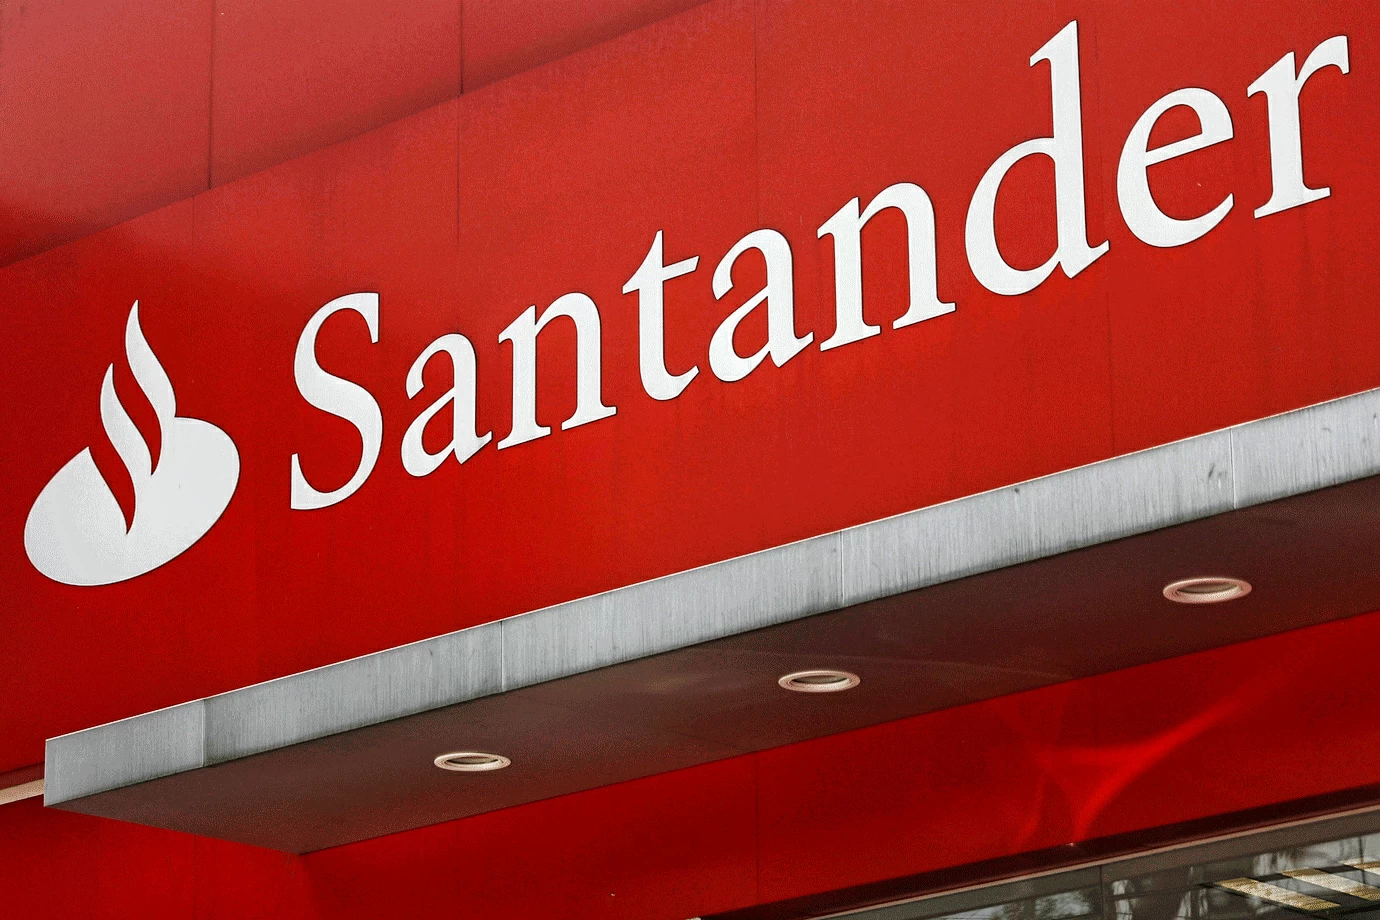 Cartão de Crédito Santander Airplus Viagem